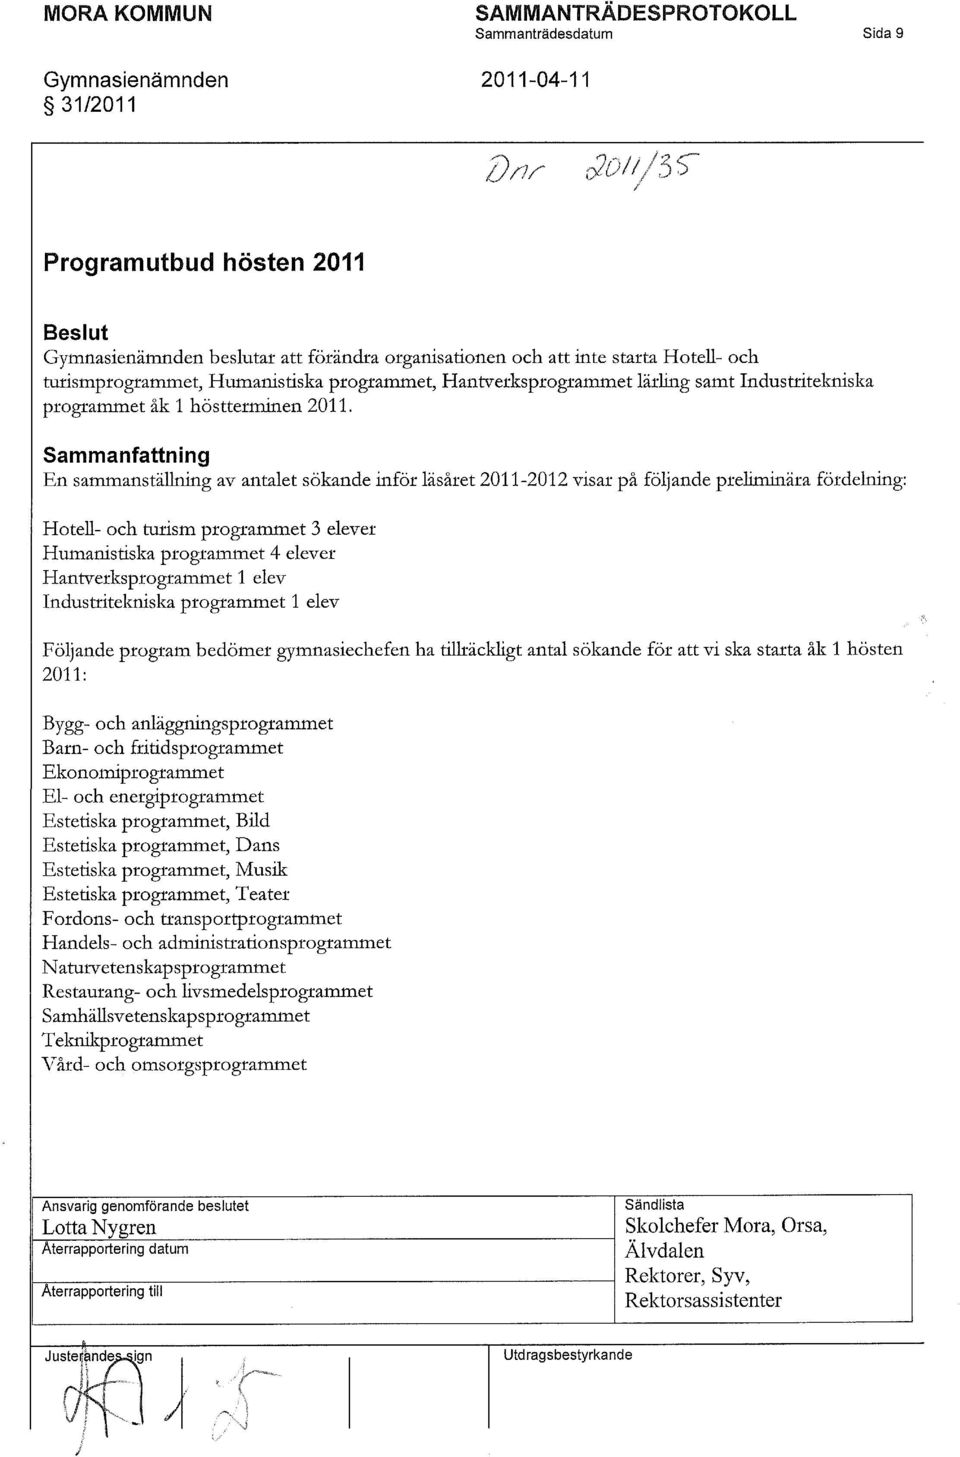 Industritekniska programmet åk 1 höstterminen 2011.